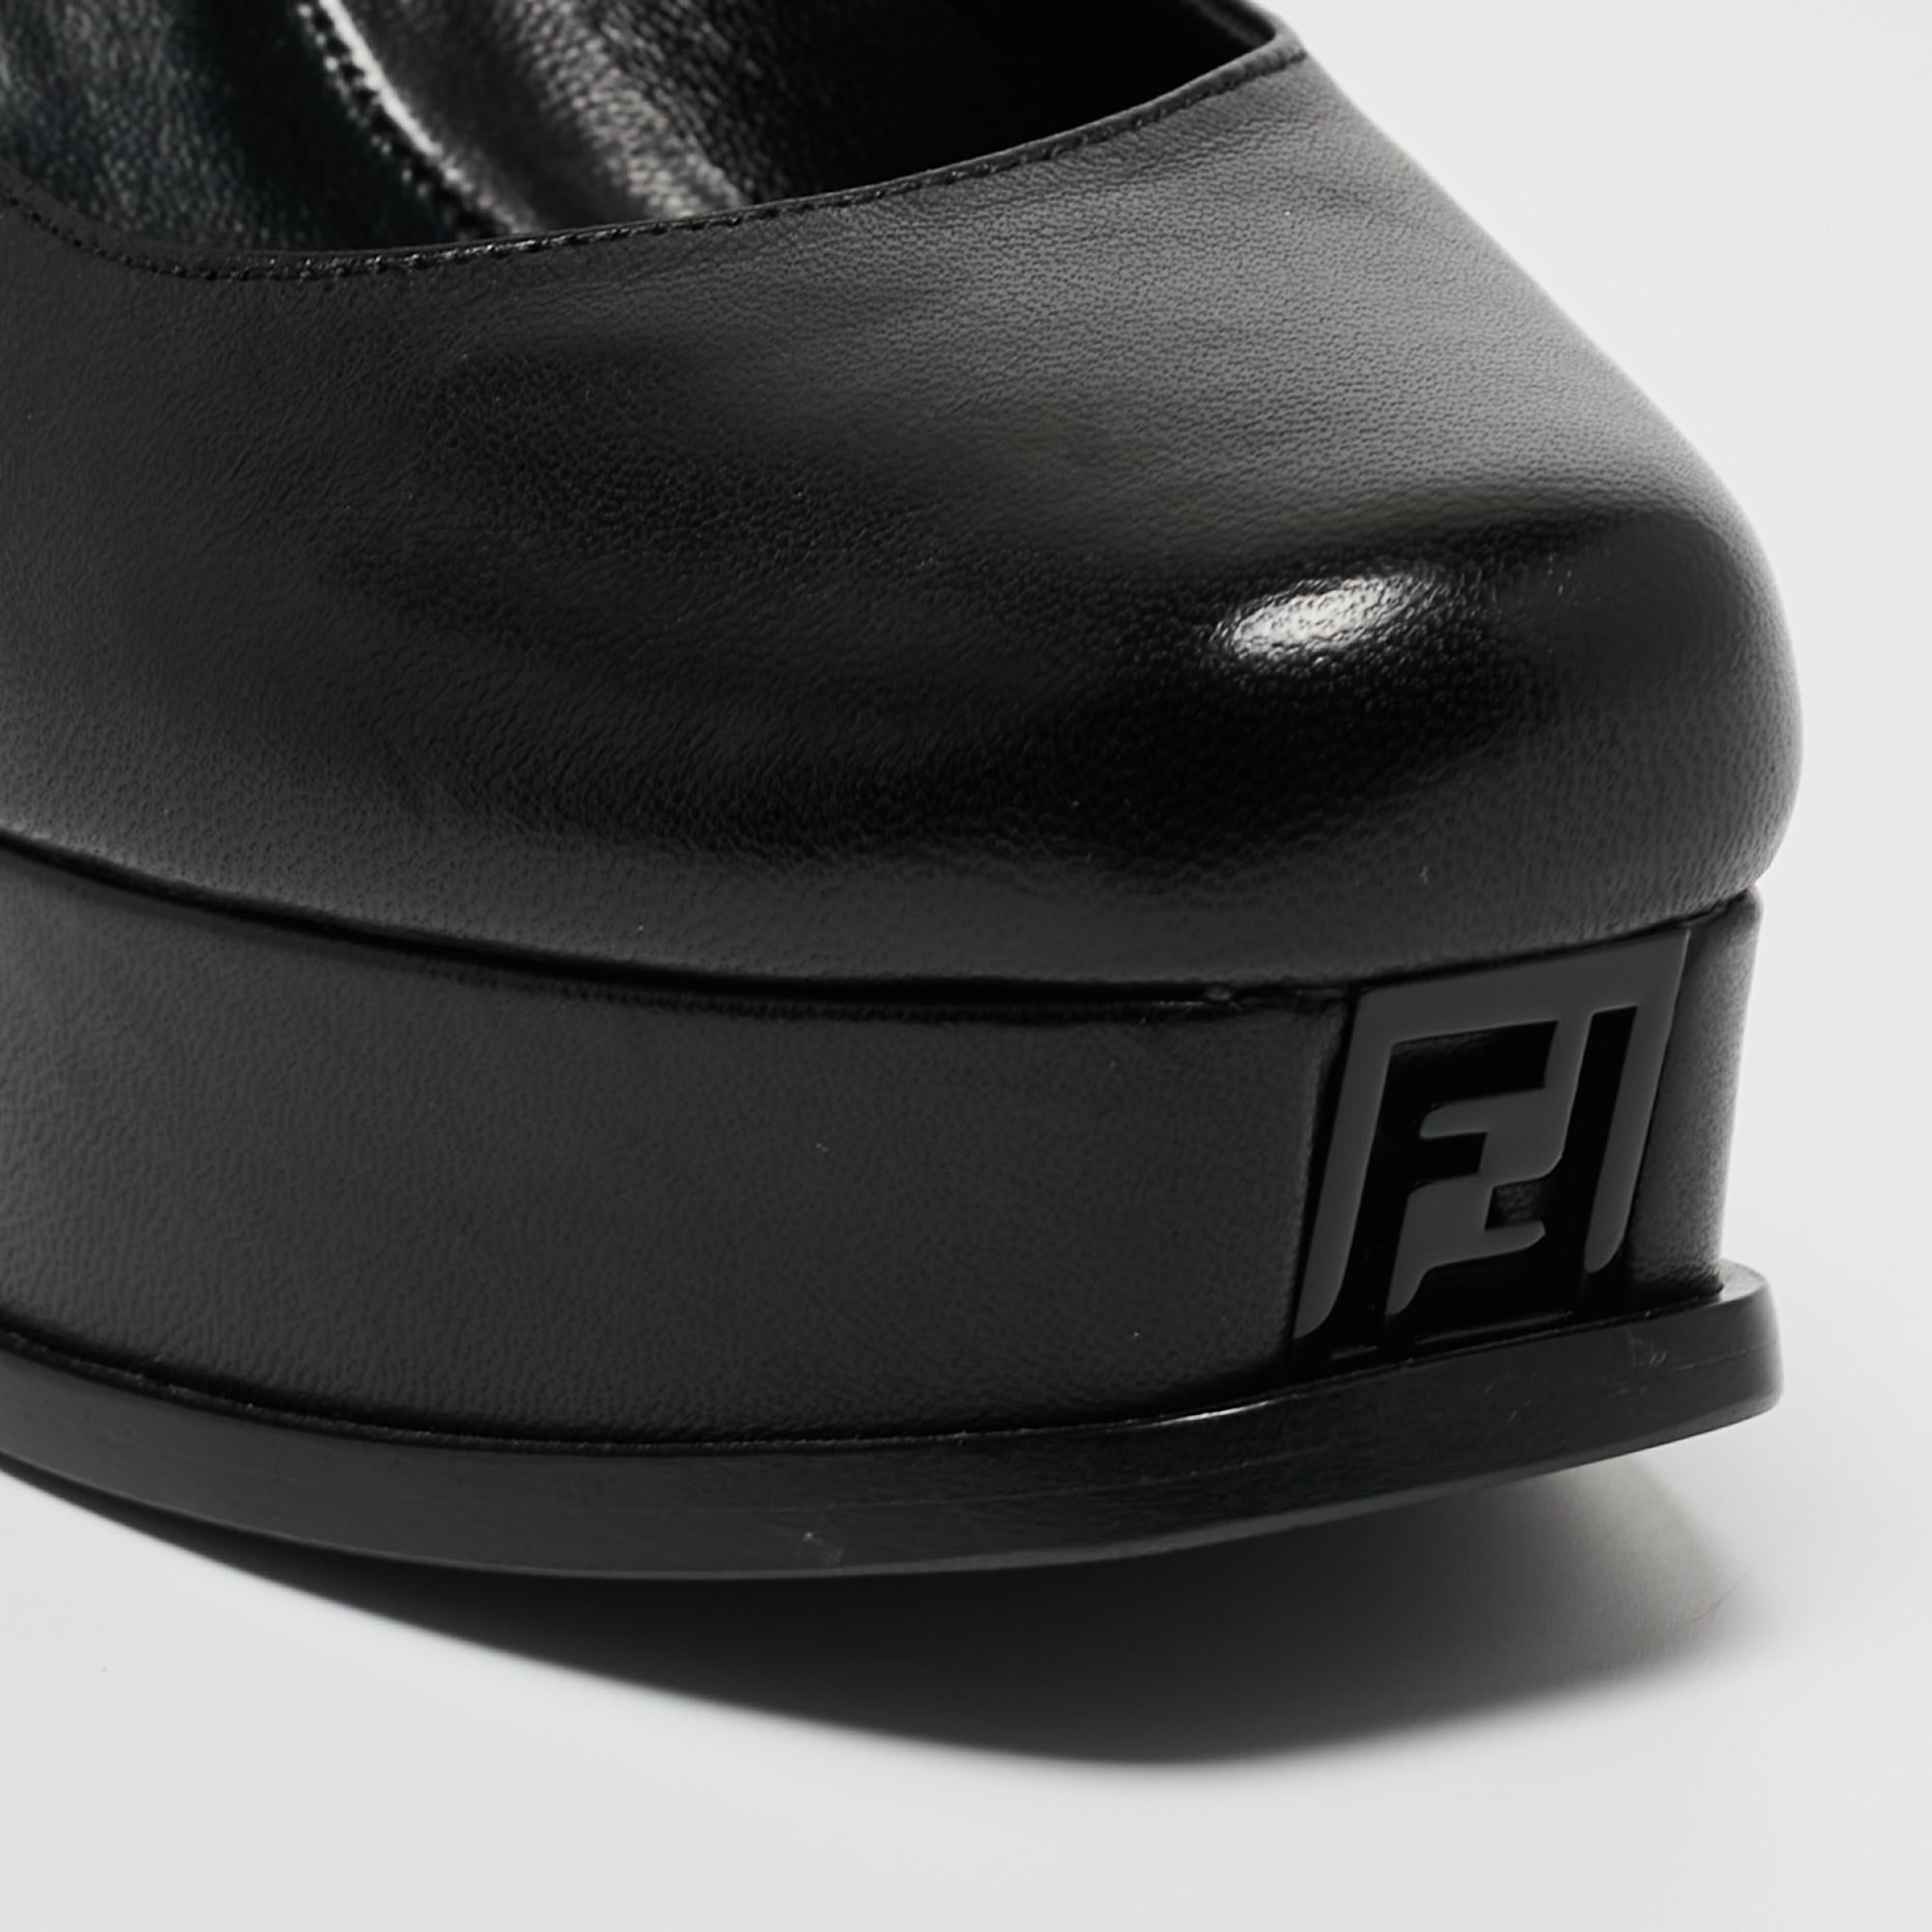 Fendi Black Leather Fendista Platform Pumps Size 37 4